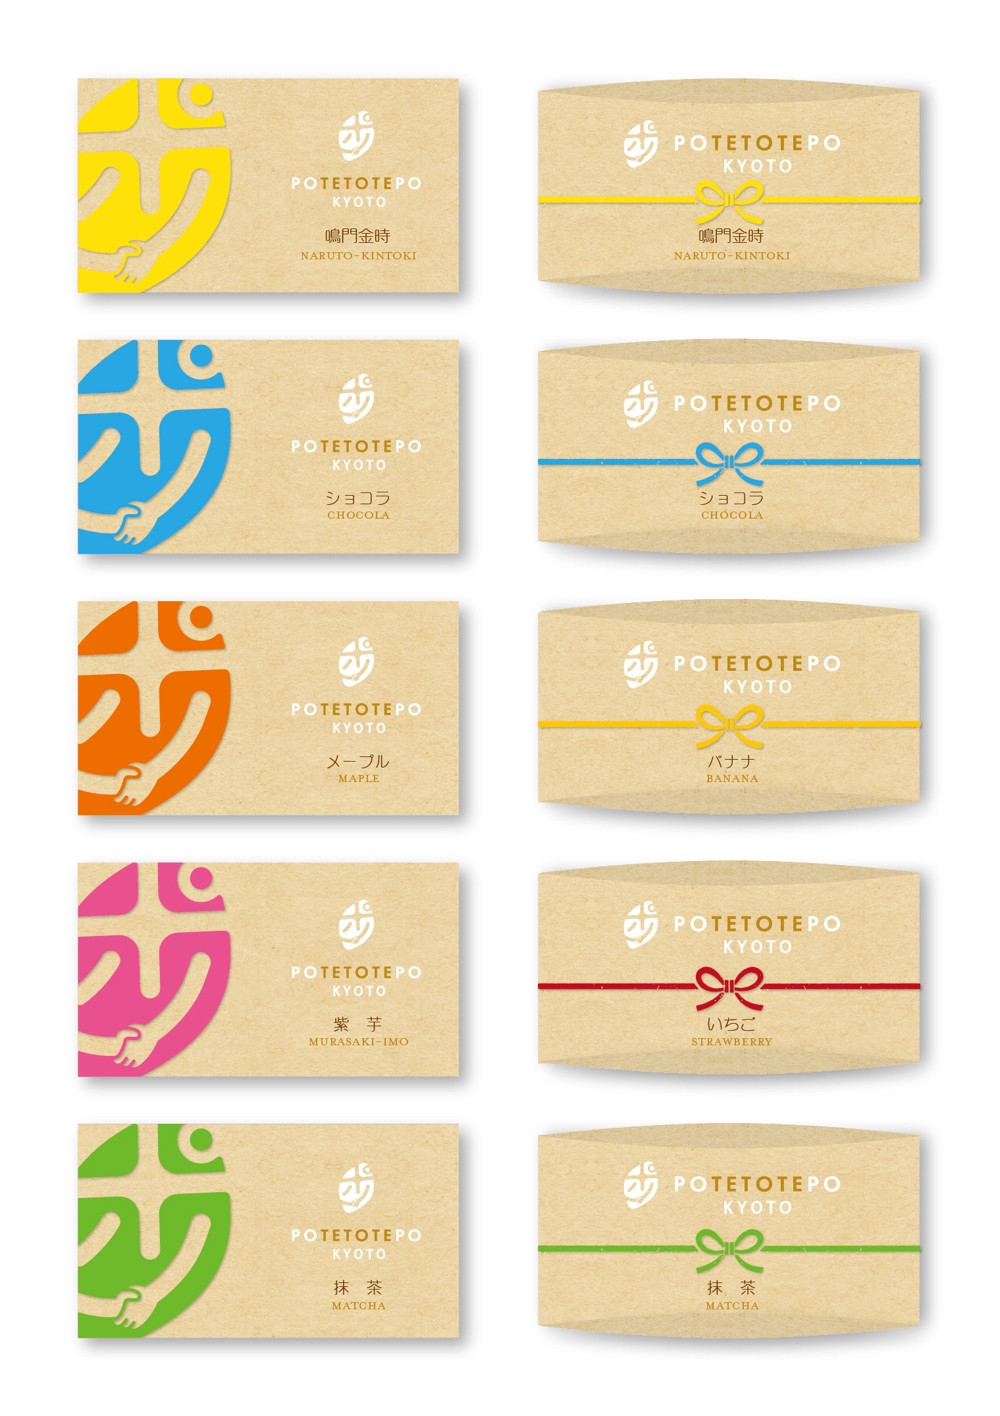 和菓子屋が作るスイートポテトパッケージのデザイン